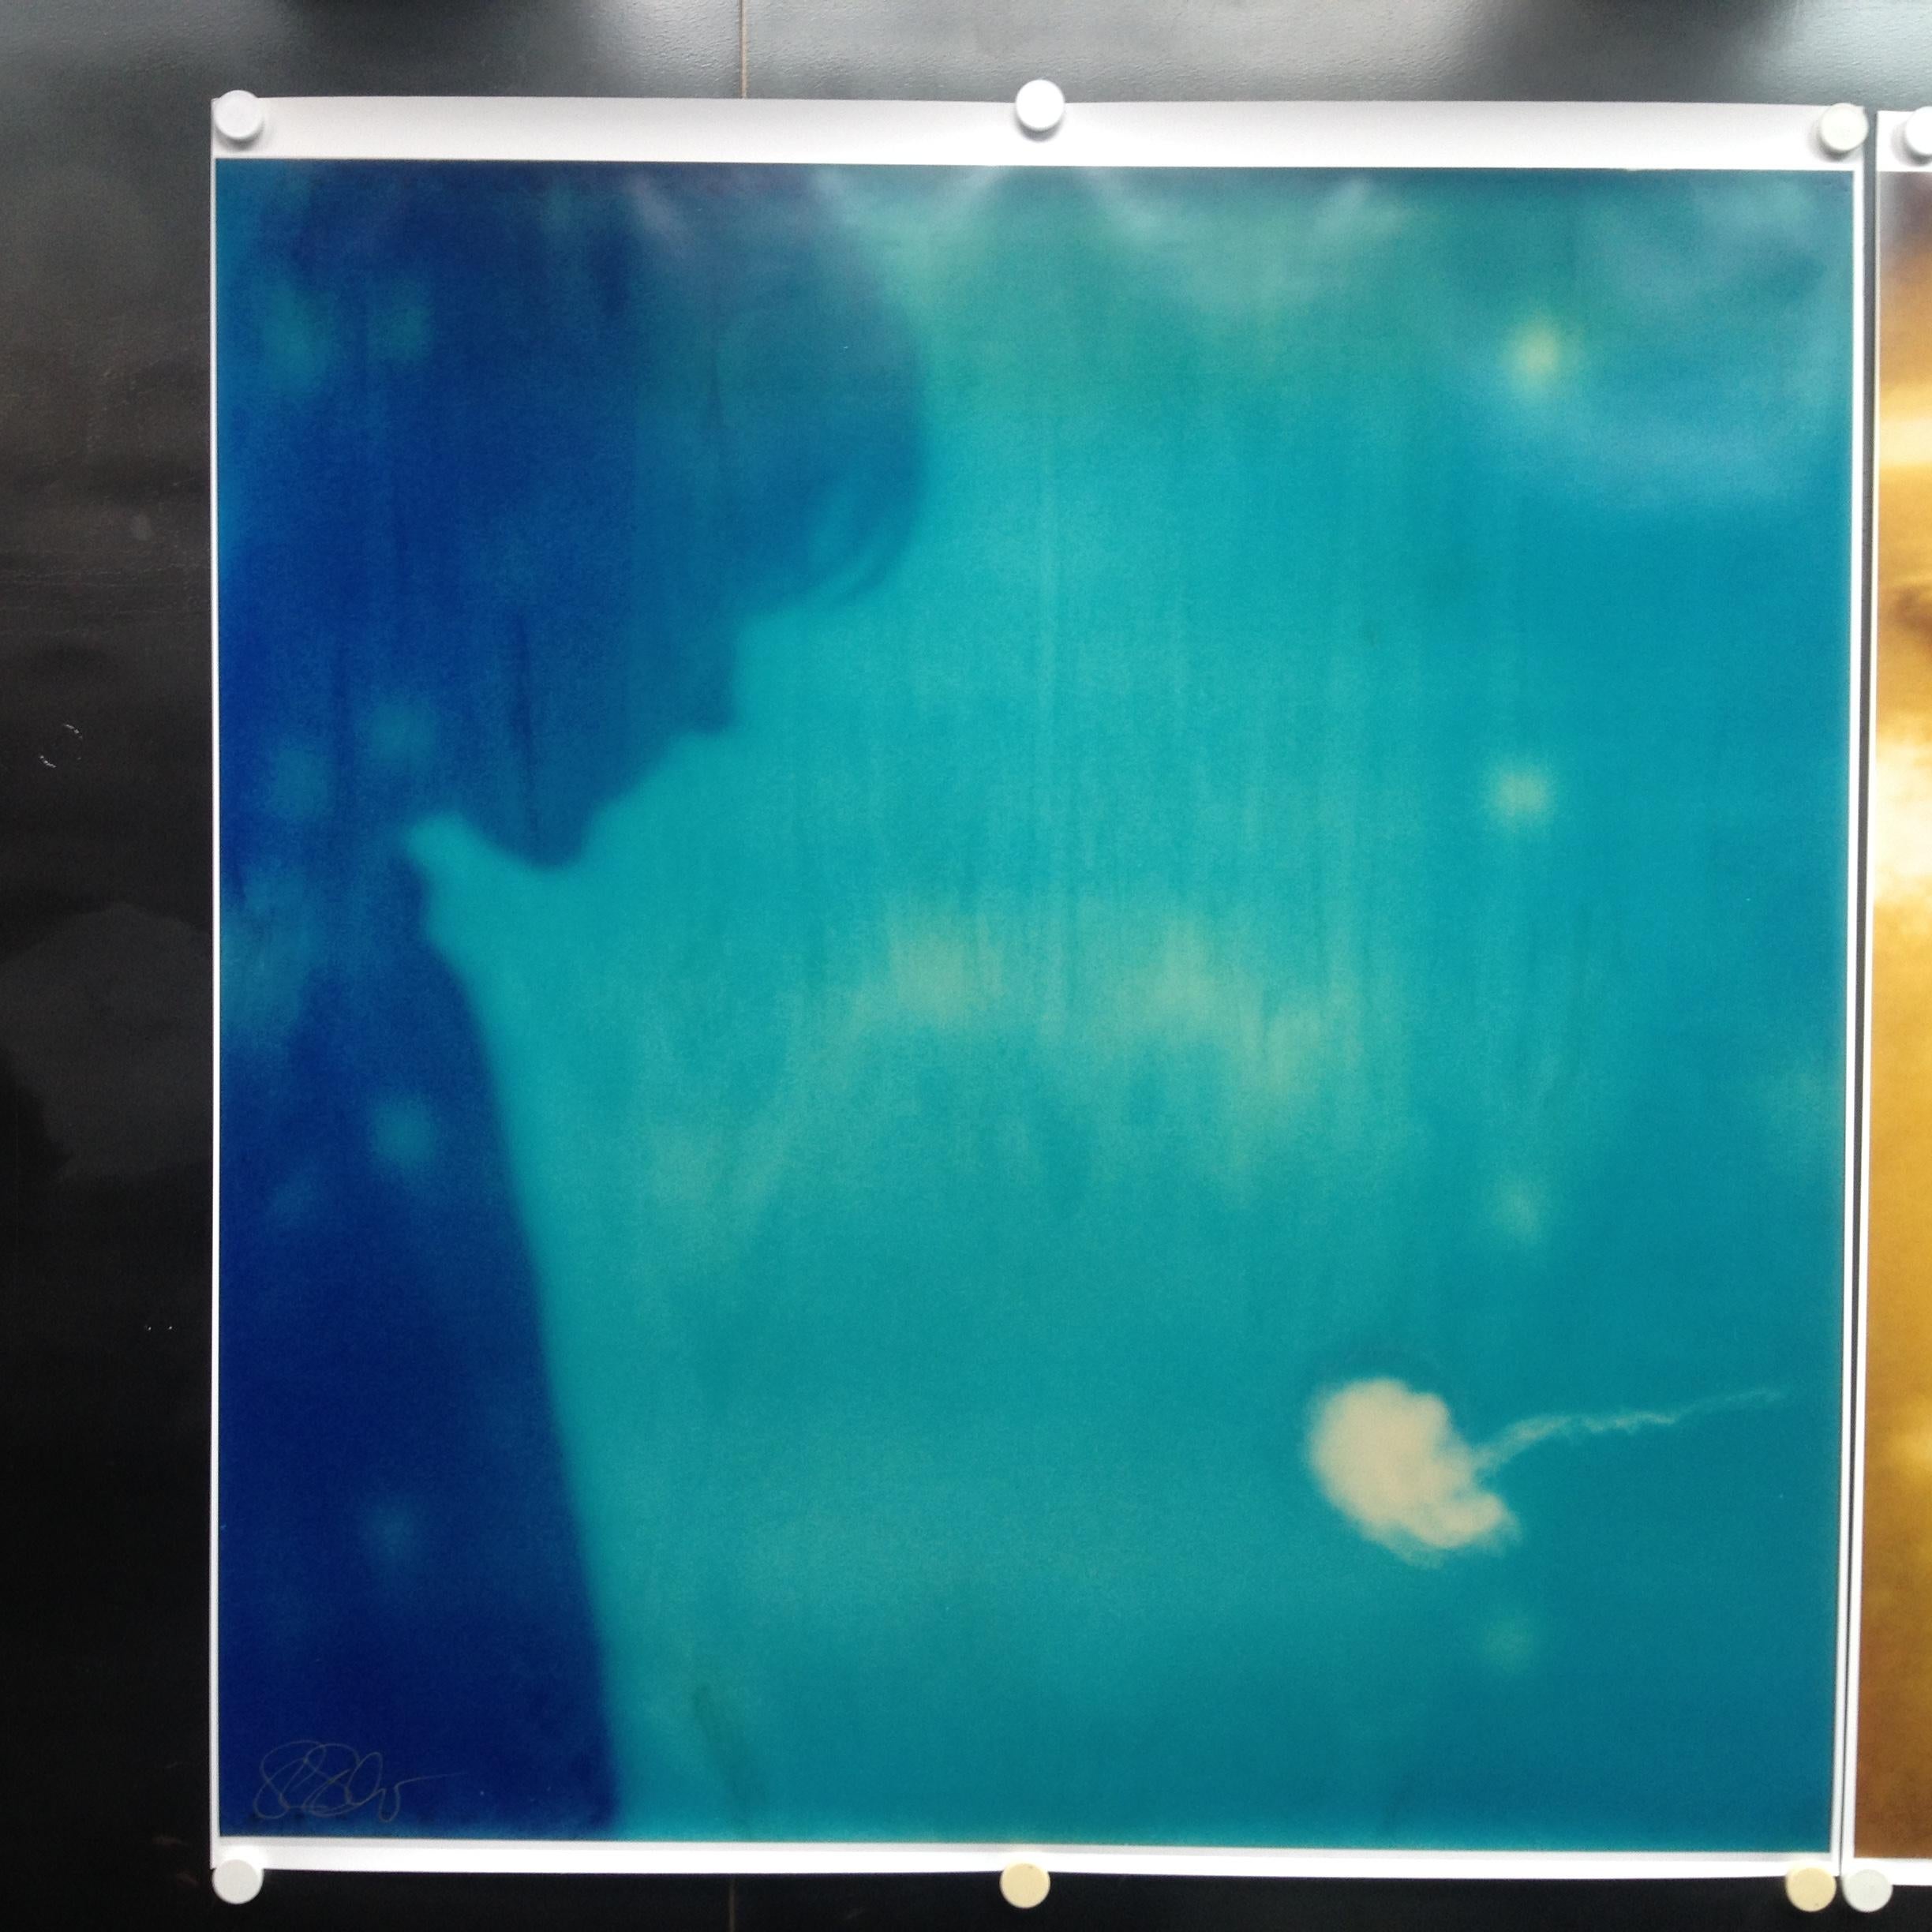 Henry et le poisson gelée (Séjour) avec Ryan Gosling - 2006

128x125cm, 
Édition de 5 exemplaires plus 2 épreuves d'artiste. 
C-Print analogique, imprimé à la main par l'artiste sur du papier Fuji Crystal Archive, d'après le Polaroïd original.
Label